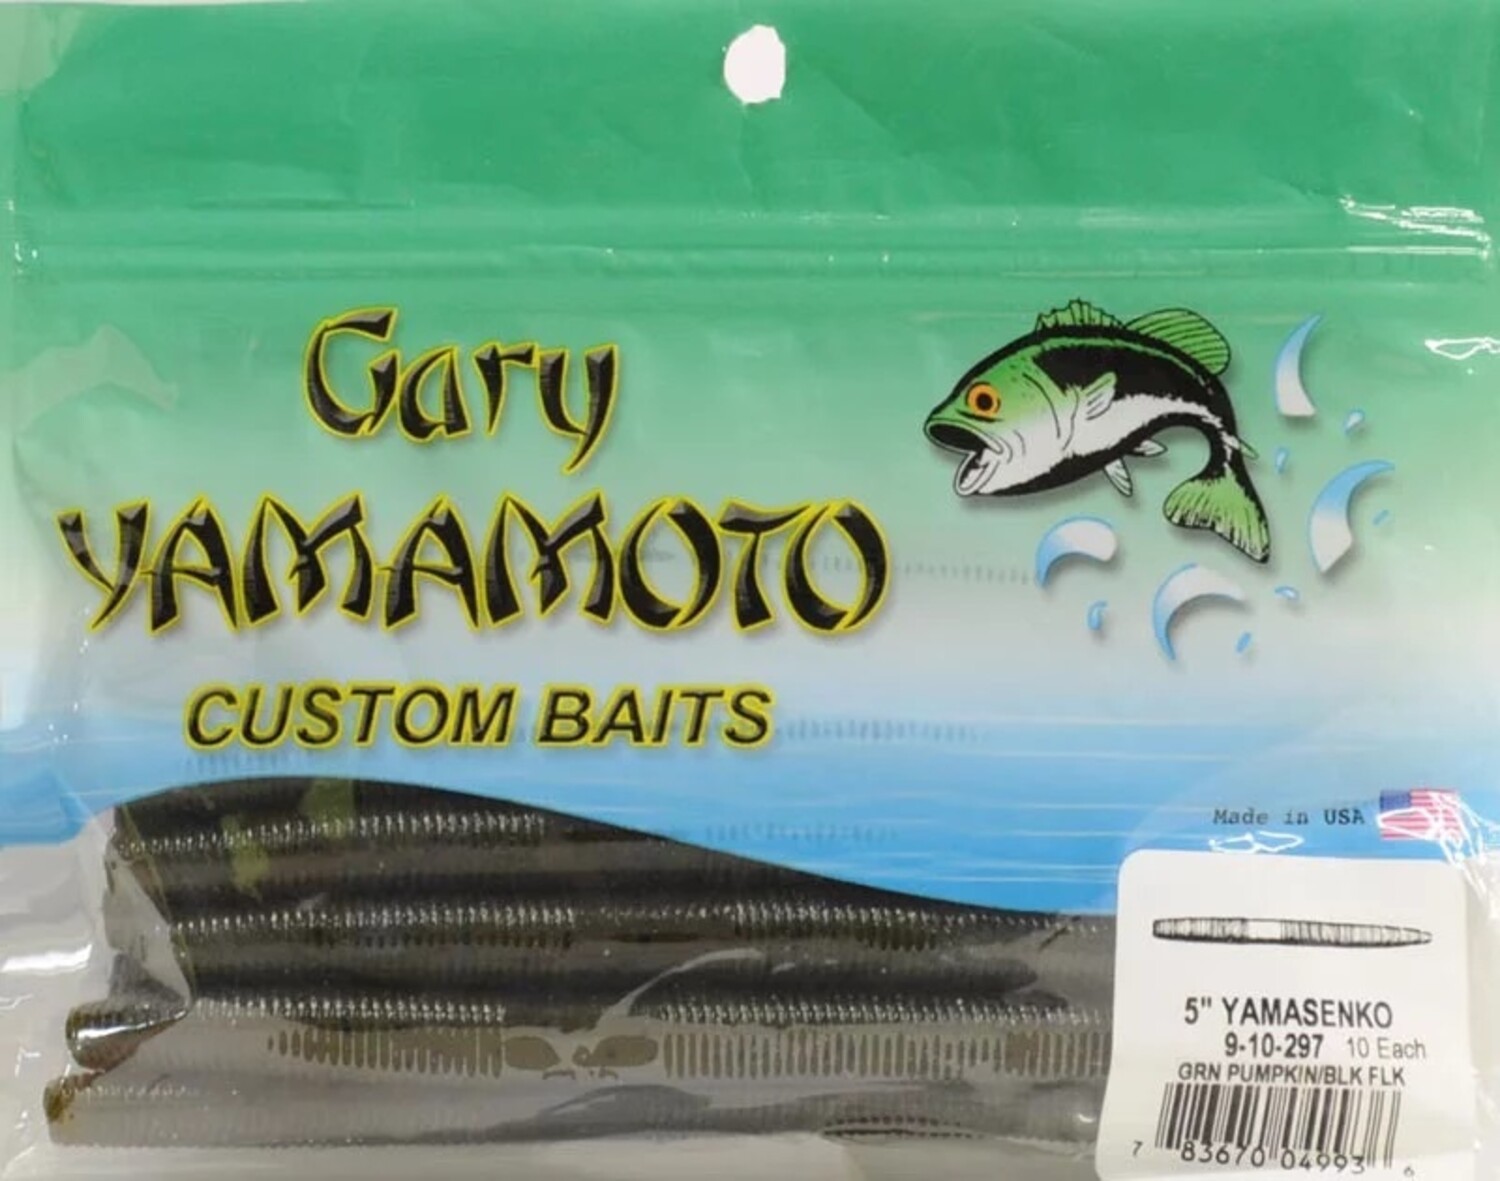 Gary Yamamoto Custom Baits - OutfitterSSM